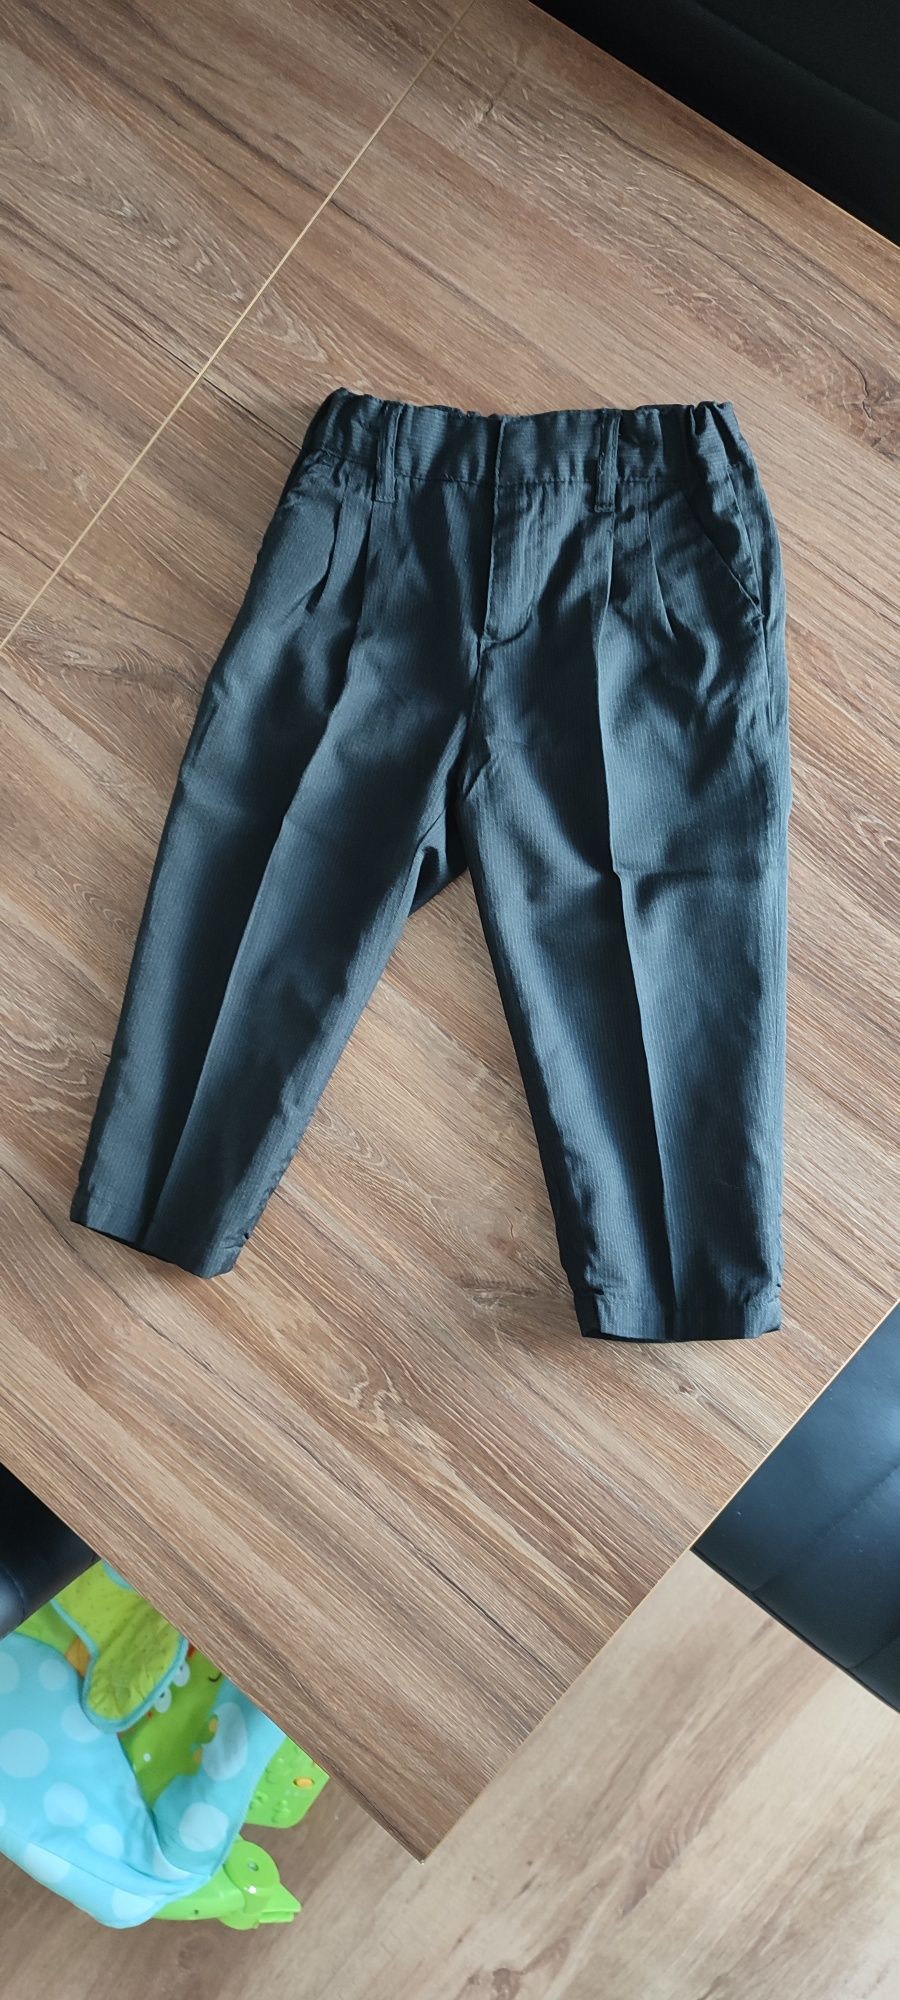 Spodnie spodenki garniturowe do garnituru chłopięce H&M rozmiar 80